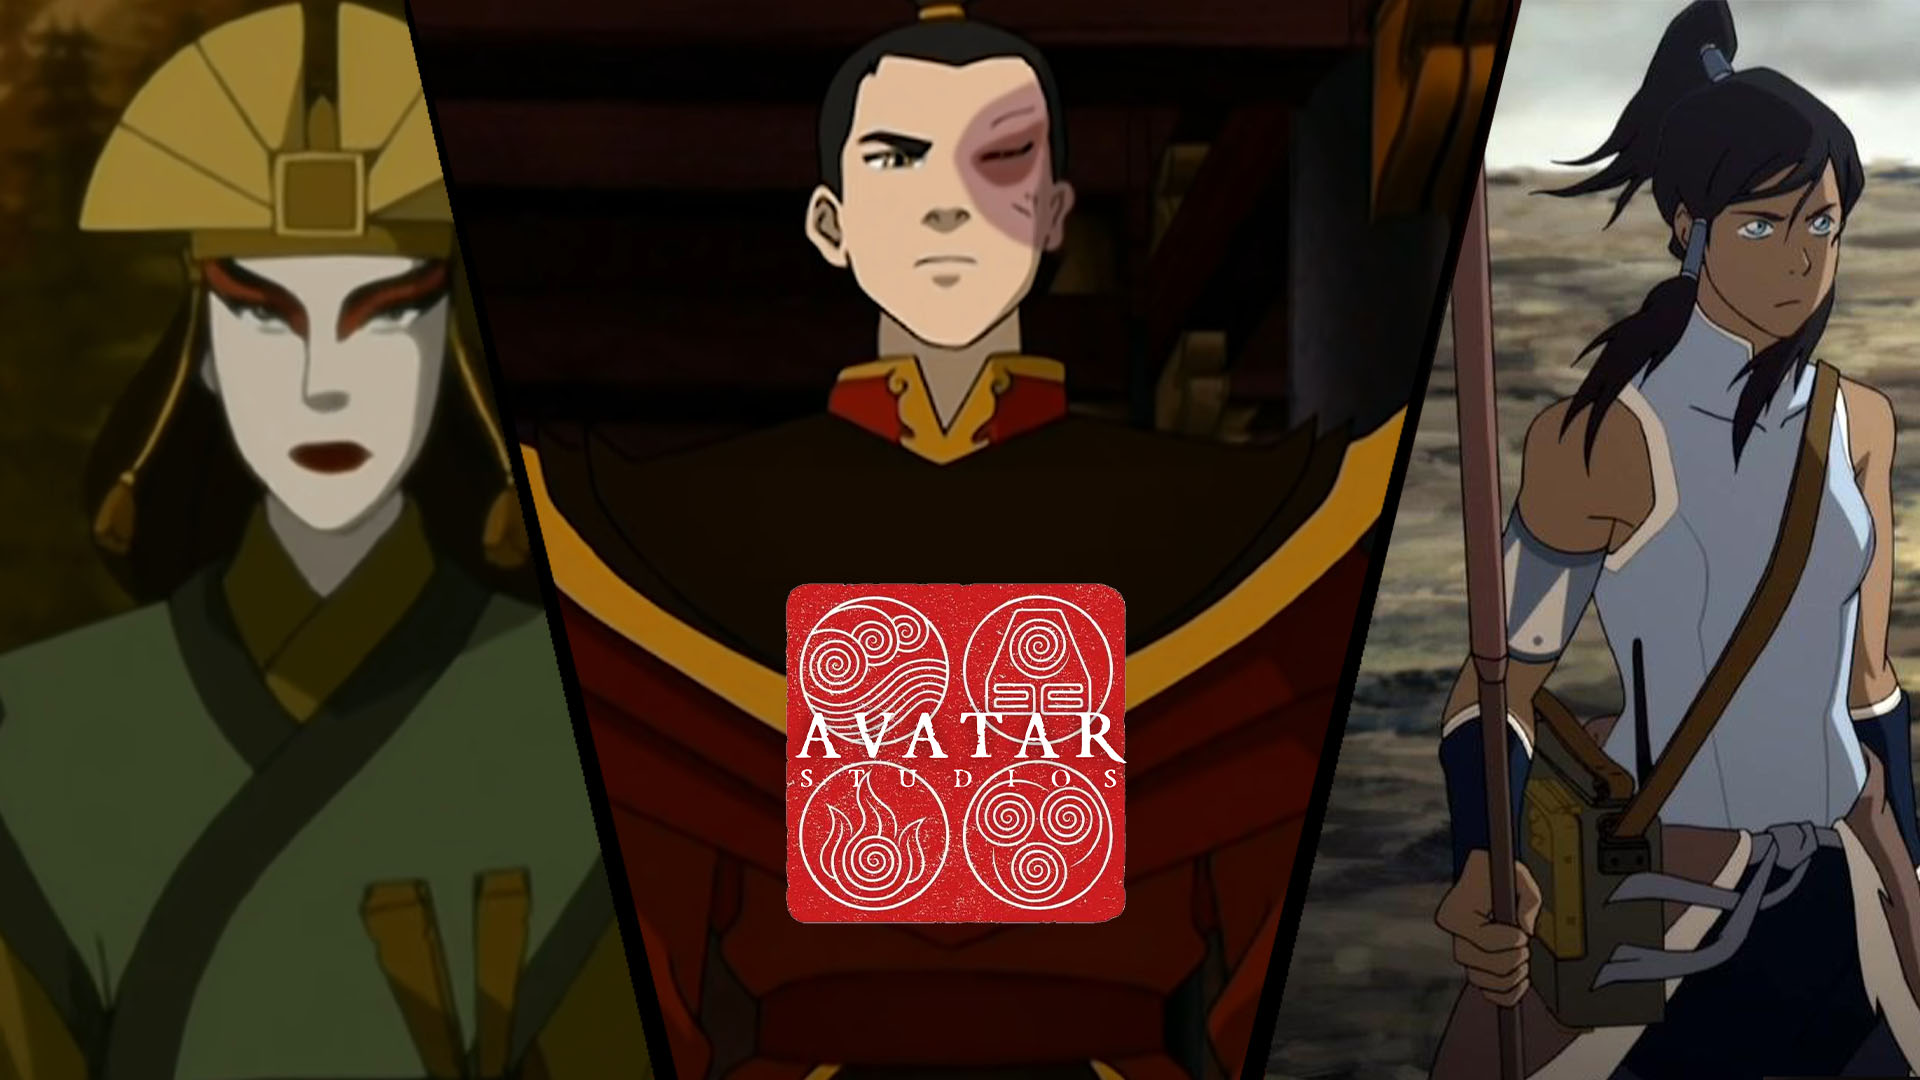 kyshoi zuko koraa avatar studios movies banner